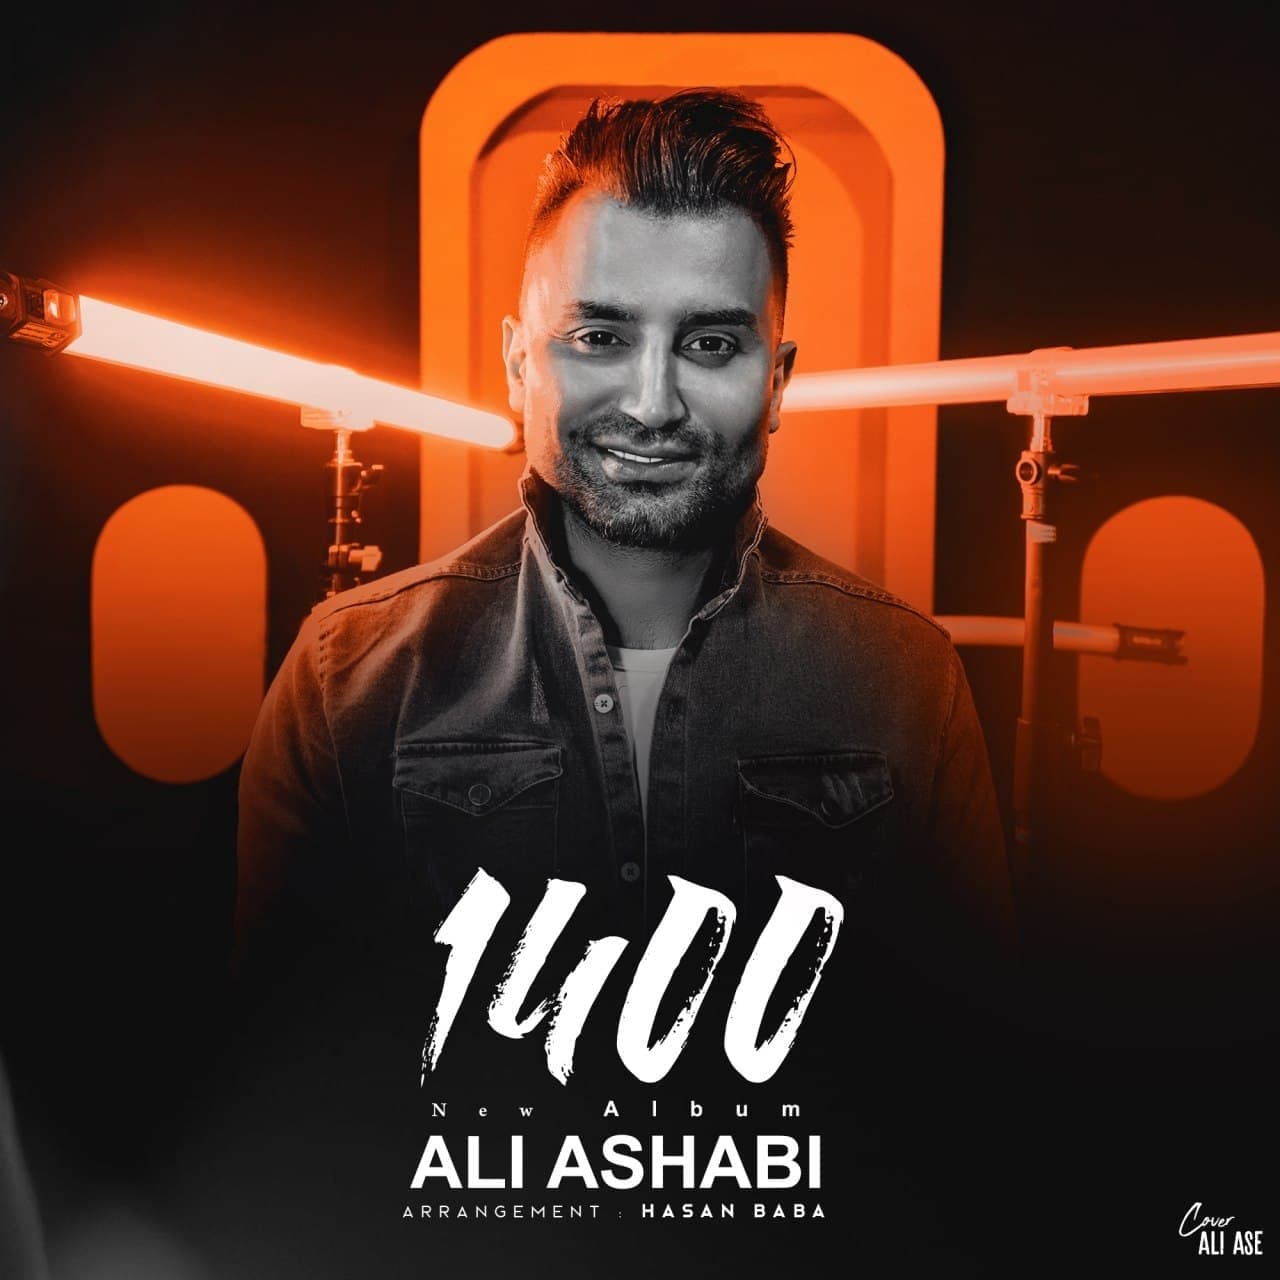 Ali Ashabi 1400 ( Album) 